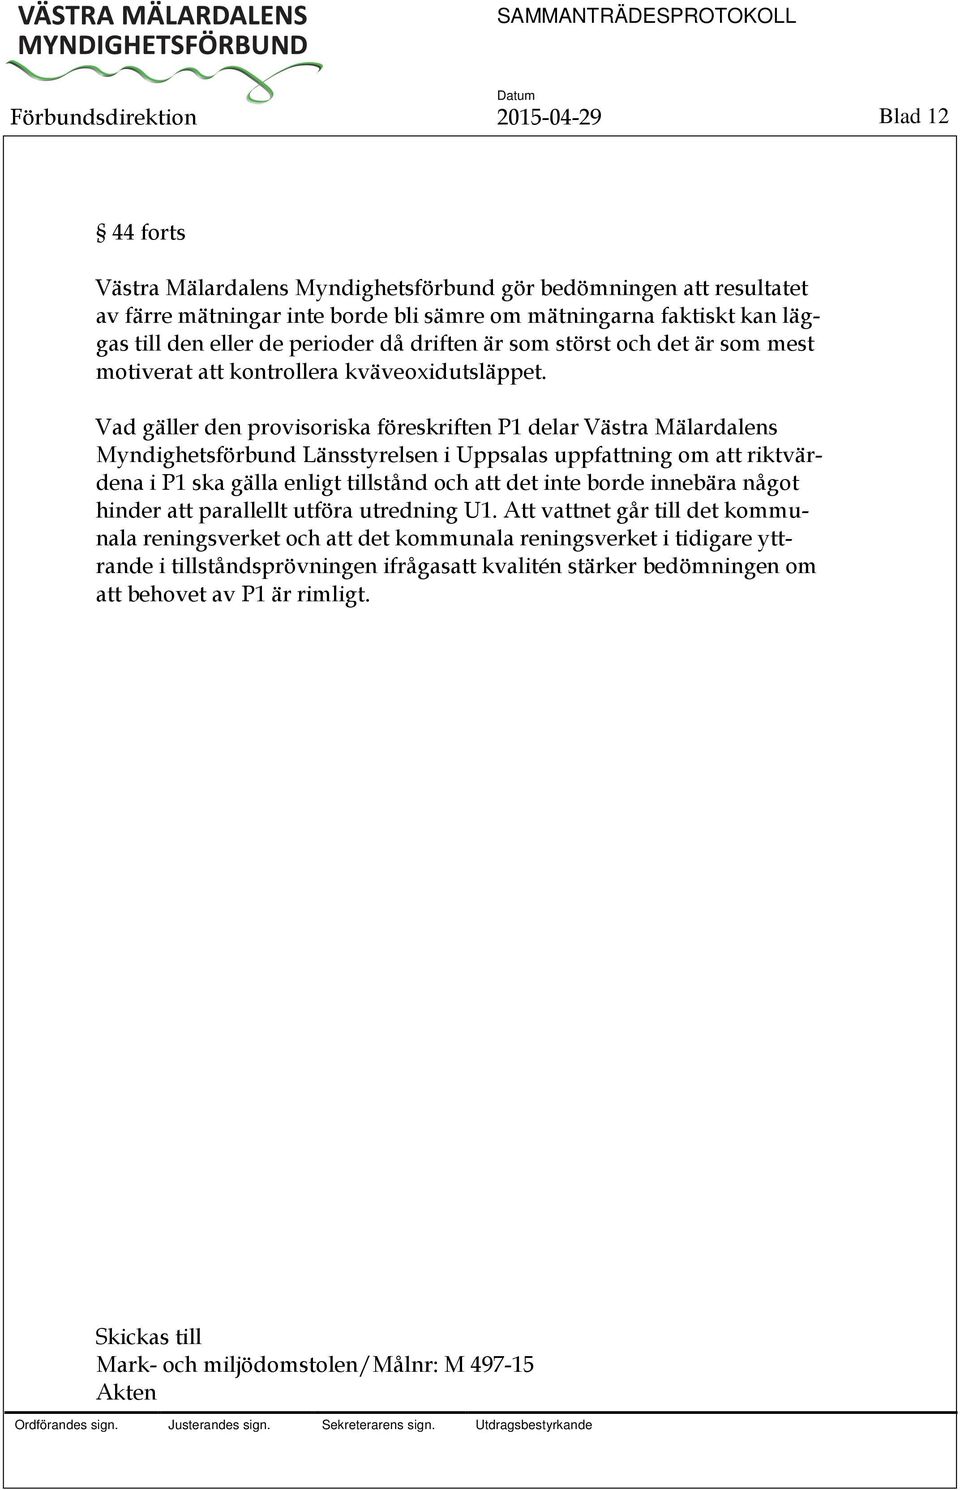 Vad gäller den provisoriska föreskriften P1 delar Västra Mälardalens Myndighetsförbund Länsstyrelsen i Uppsalas uppfattning om att riktvärdena i P1 ska gälla enligt tillstånd och att det inte borde